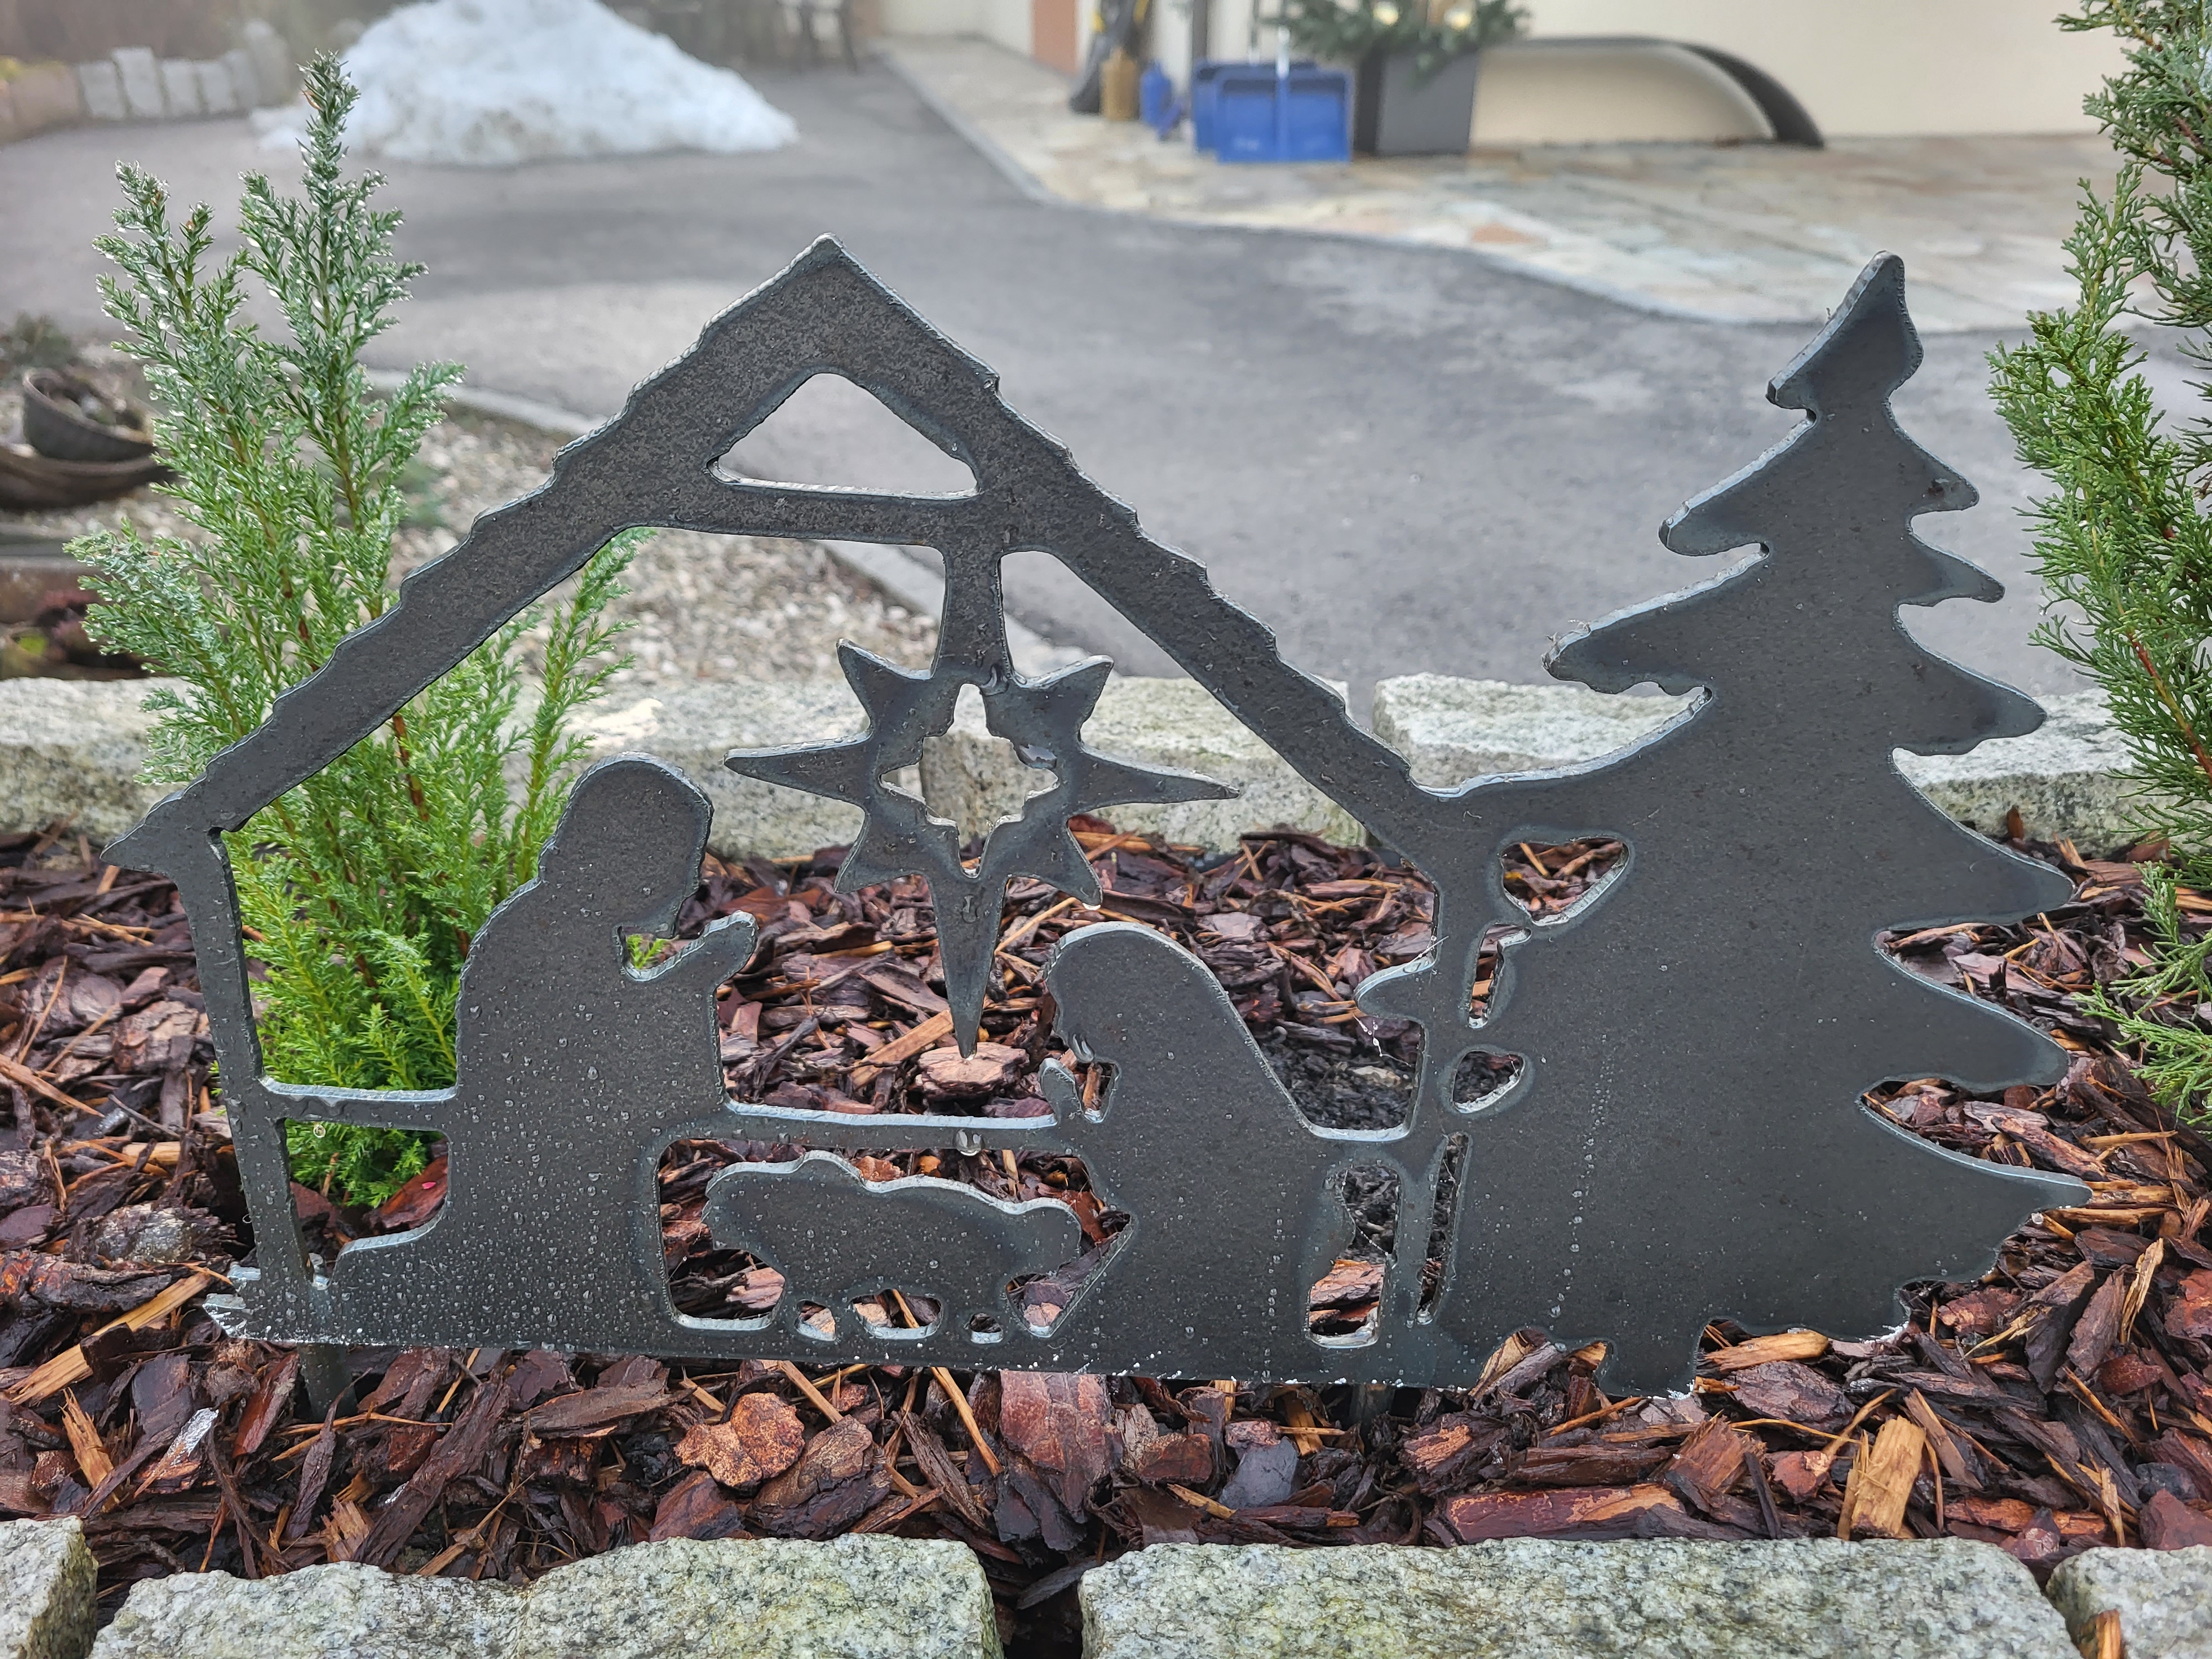 Dammerer-Metall Deko-Bäumchen weihnachtsbaum Geschenkidee